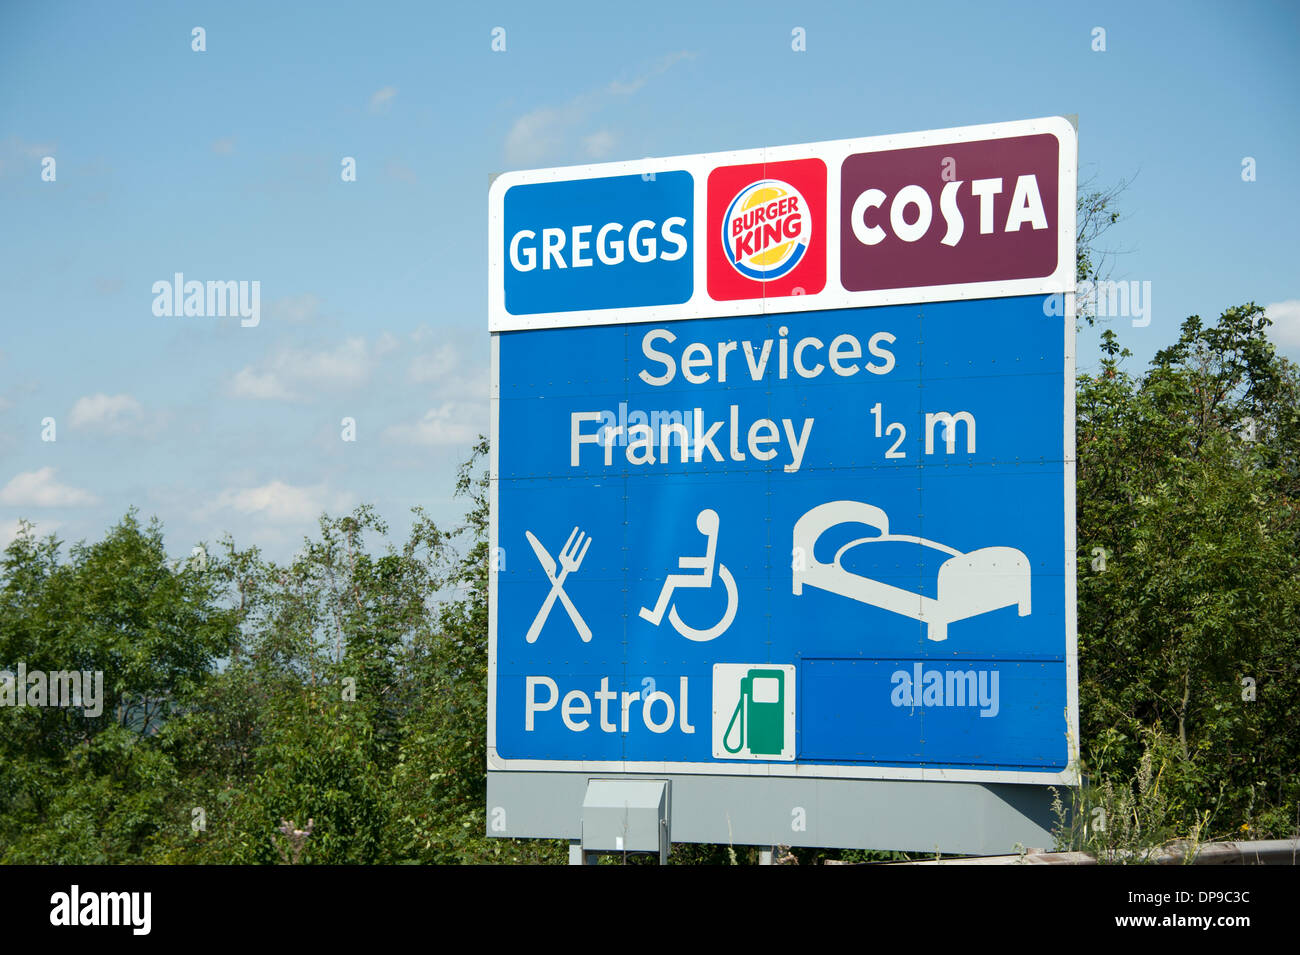 Los servicios de la autopista Frankley Greggs Costa gasolina Foto de stock